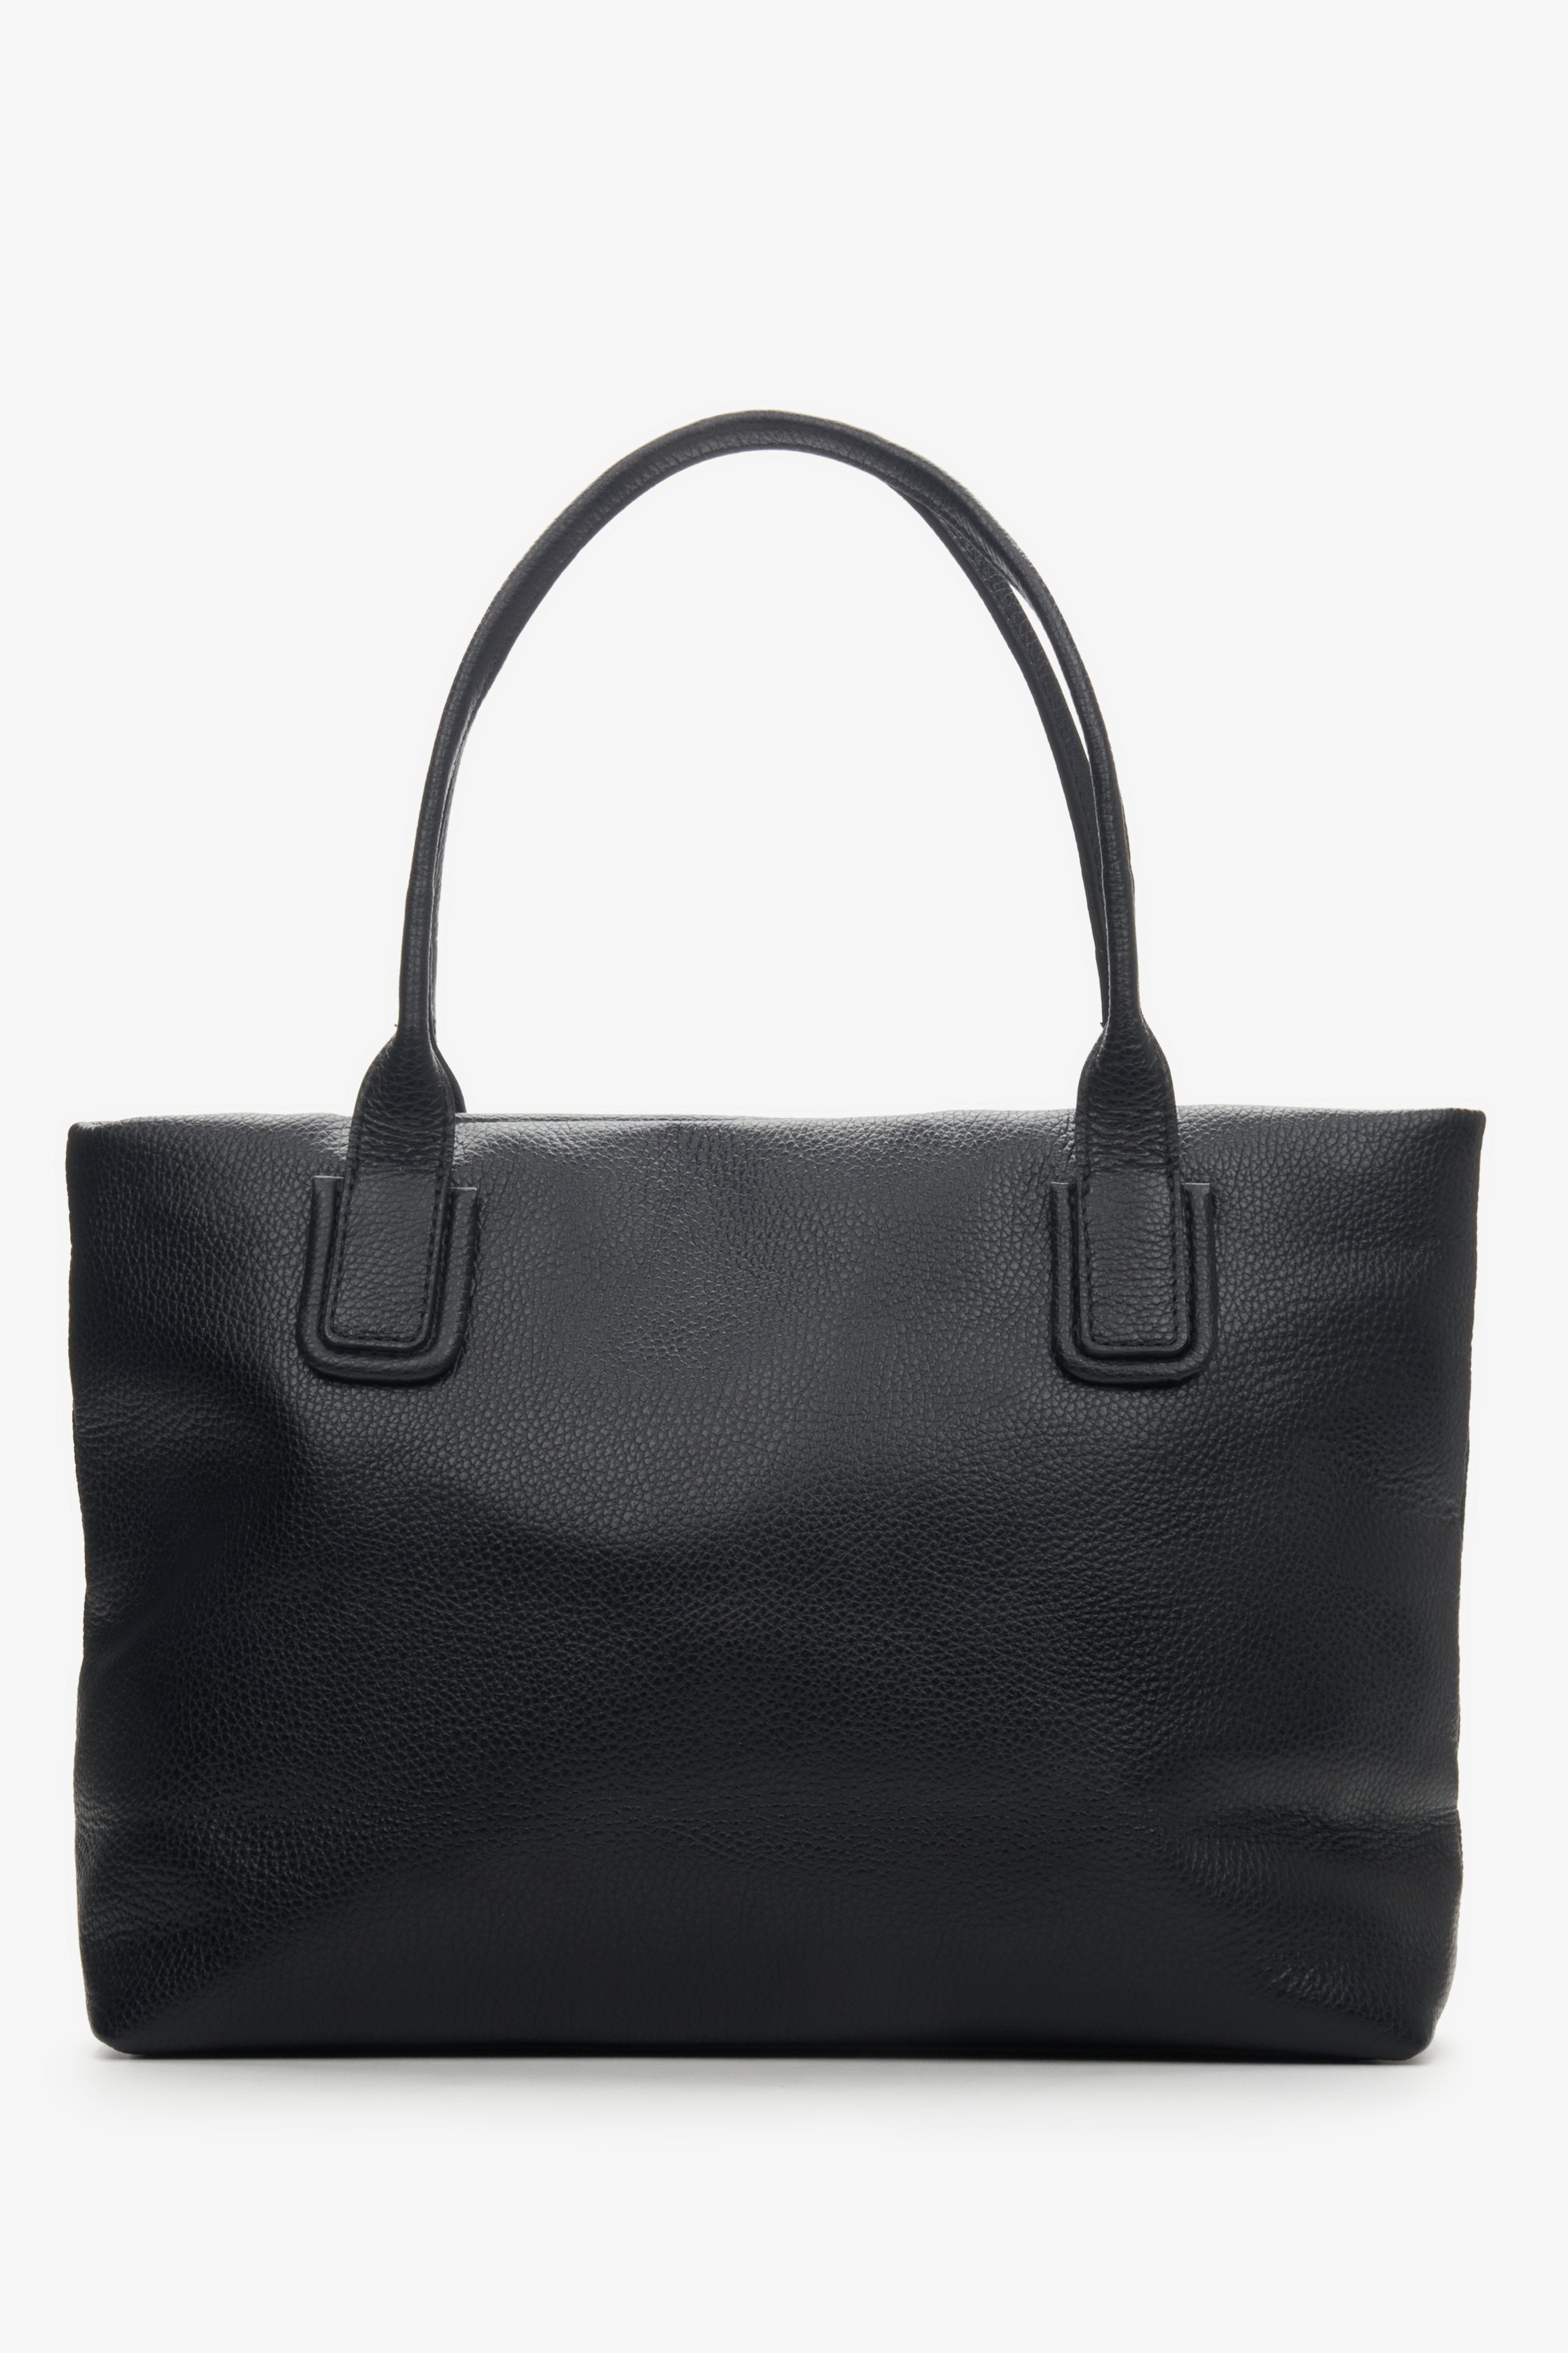 Czarna torebka damska typu shopper z włoskiej skóry naturalnej Estro - tył modelu.